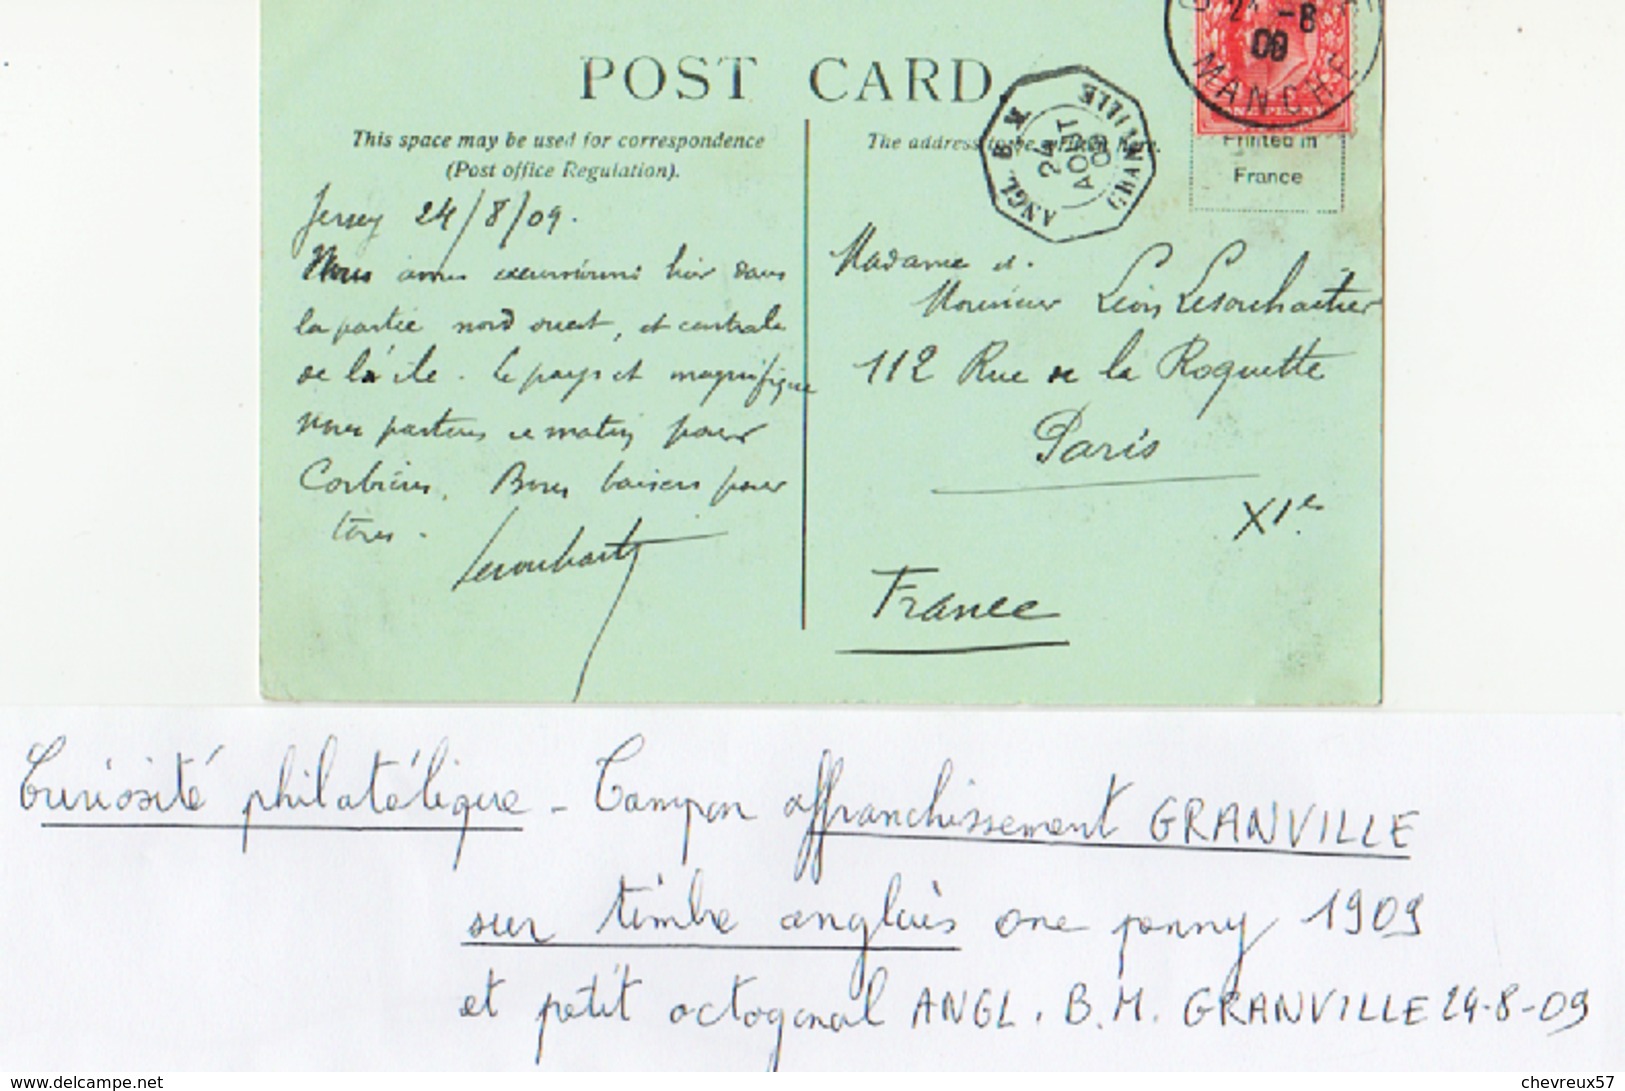 VILLES ET VILLAGES DE FRANCE - LOT 34 - 70 Cartes Anciennes Dont 6 étrangères - 1 Curiosité Phil. Lot à étudier - 5 - 99 Postcards